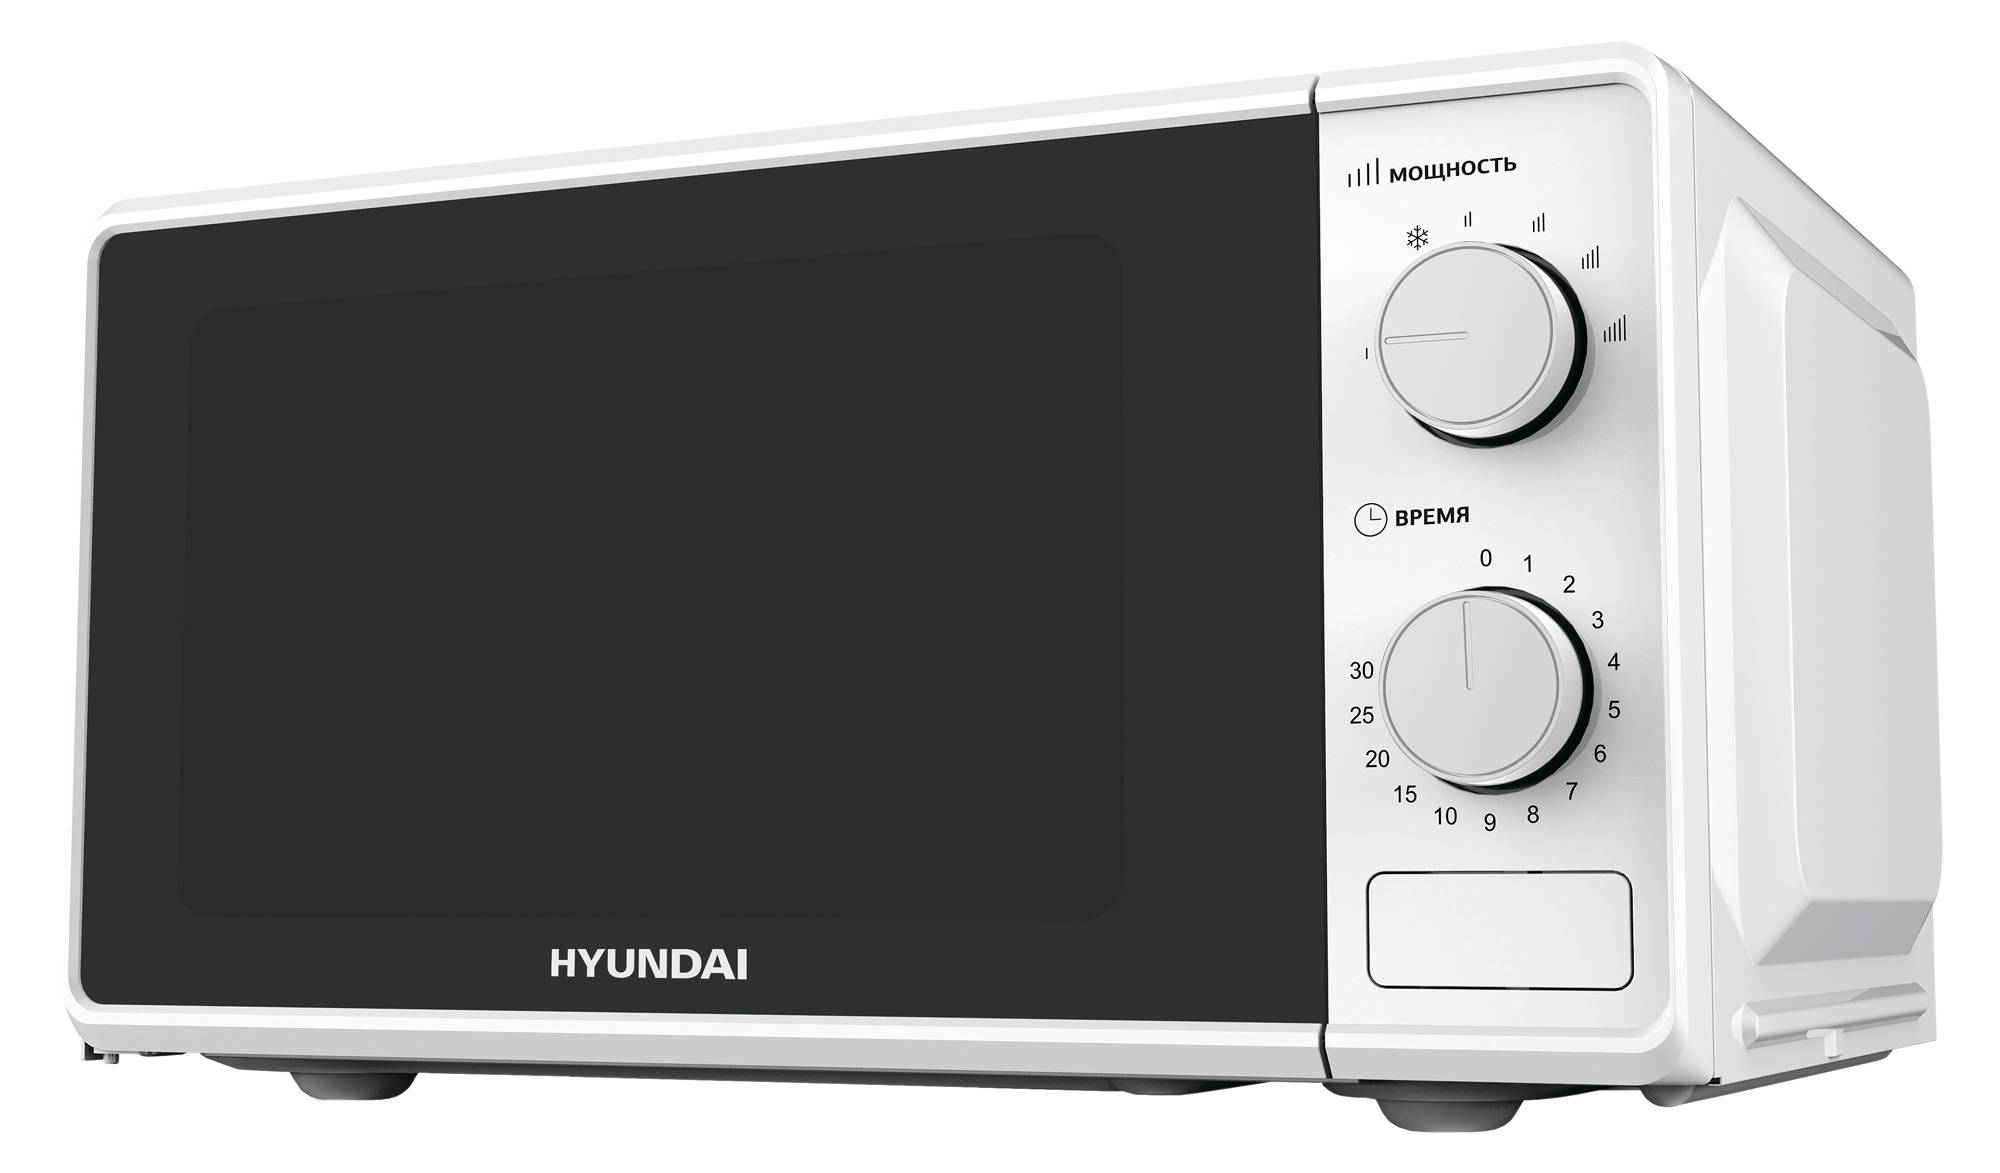 Микроволновая печь Hyundai HYM-M2044, белый